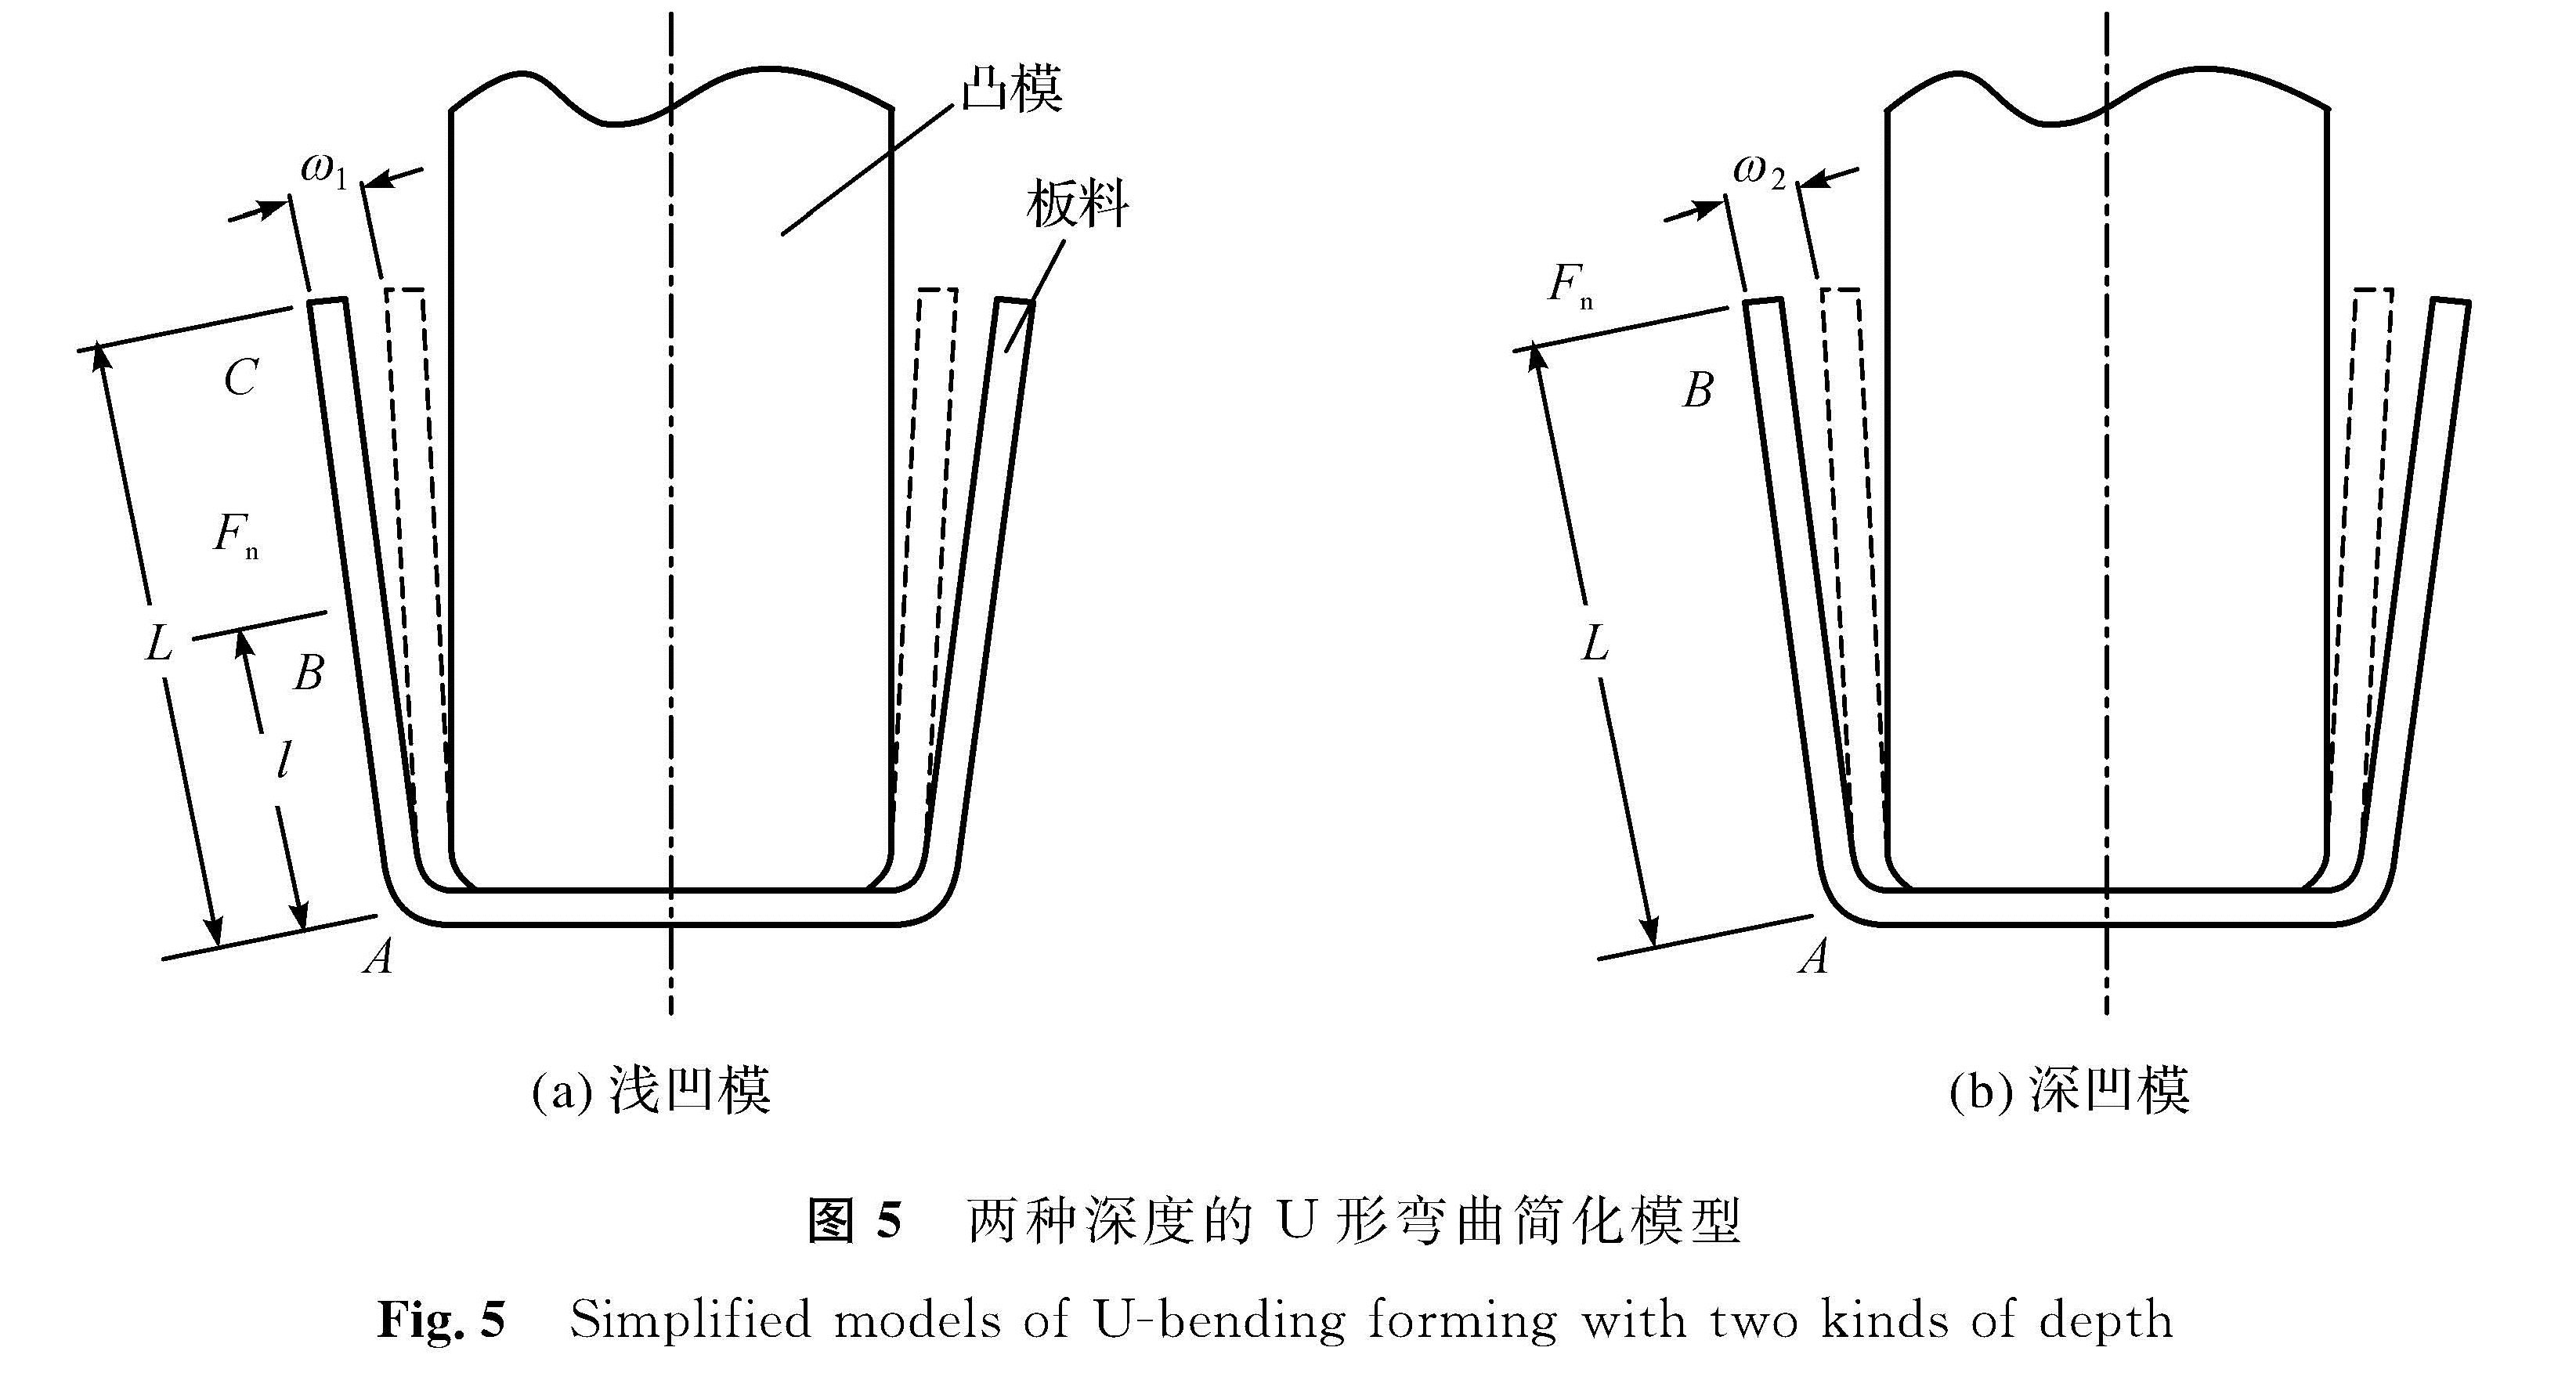 图5 两种深度的U形弯曲简化模型<br/>Fig.5 Simplified models of U-bending forming with two kinds of depth